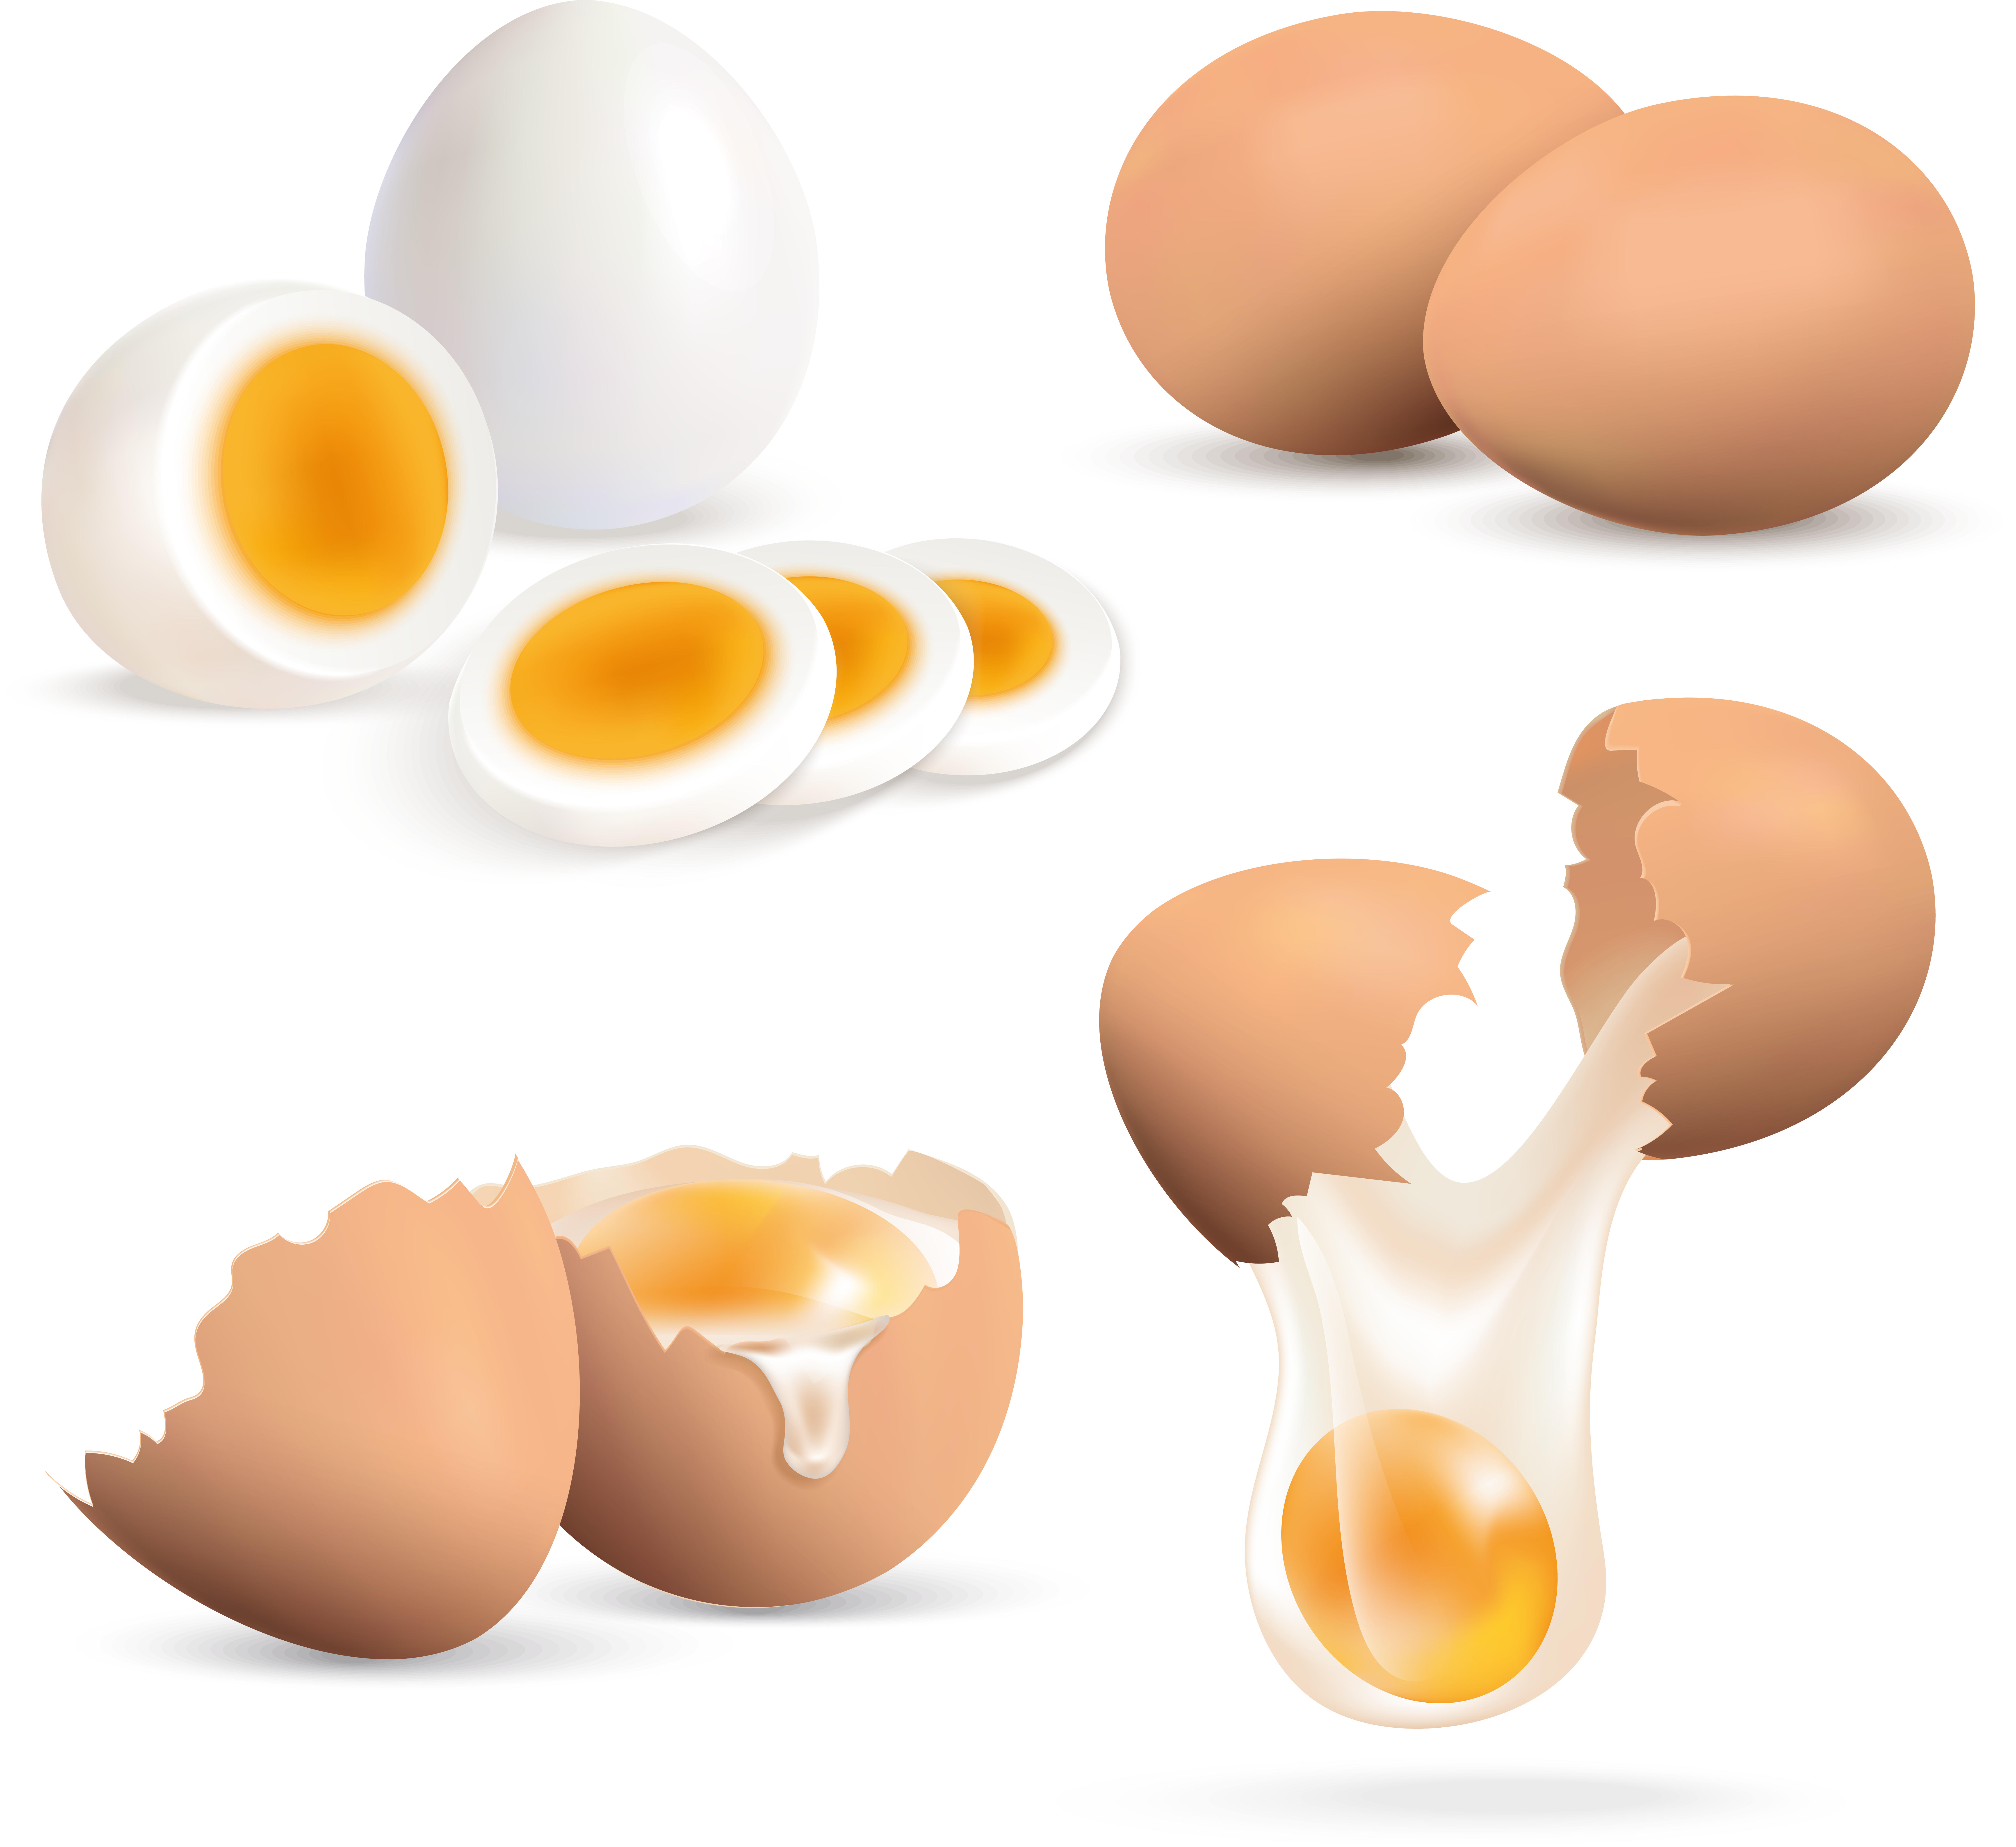 깨진 달걀, 자른 달걀